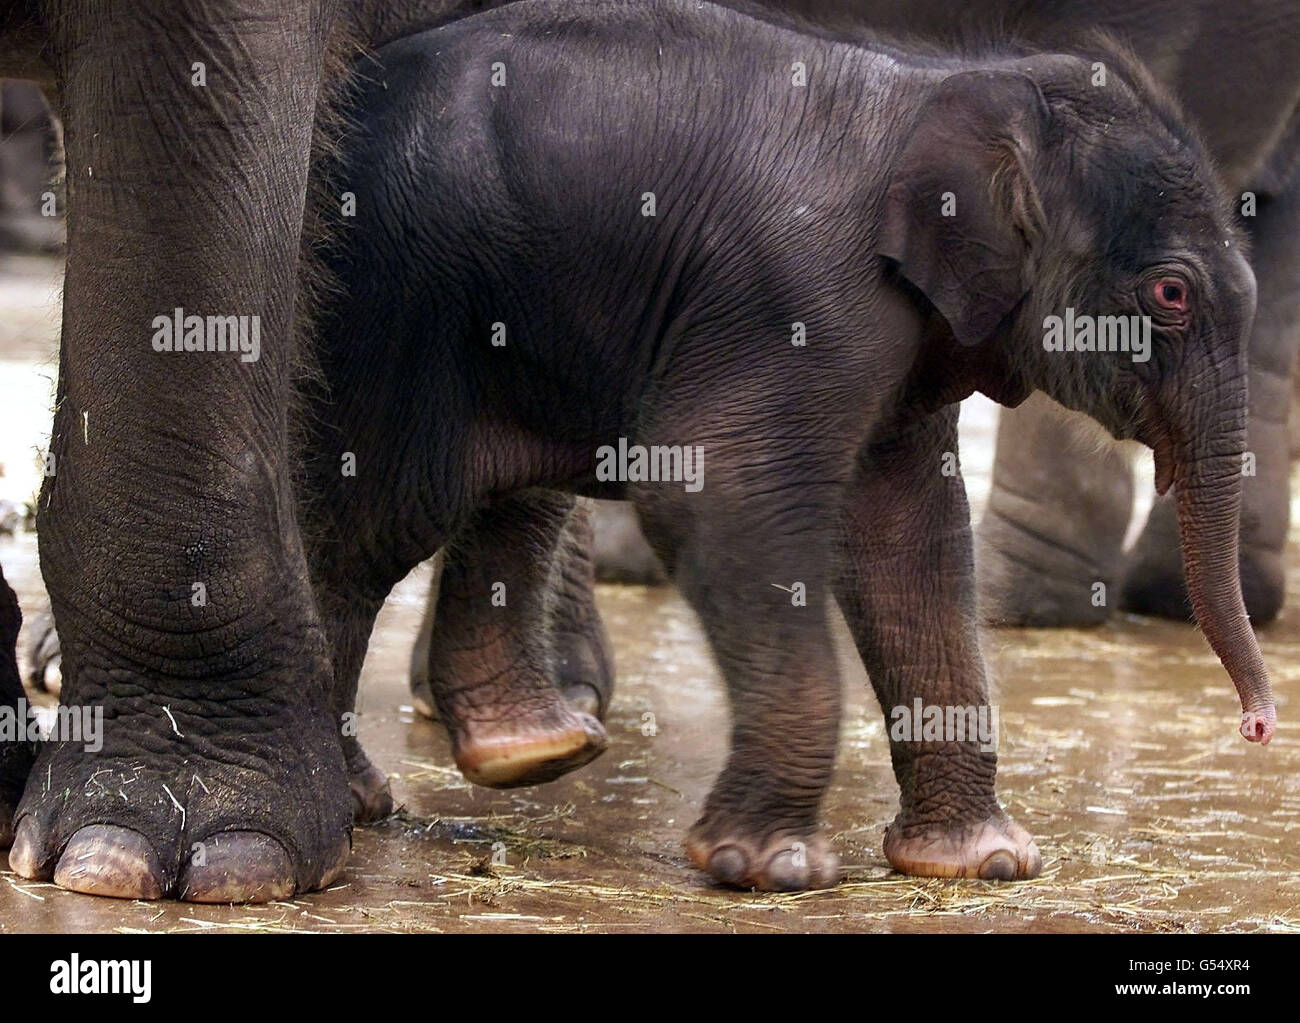 Ein vier Tage alter asiatischer Elefant, geboren als fünfzehnjähriger Thi-Hi-Way, tritt zum ersten Mal öffentlich im Chester Zoo auf. Das neue Baby ist ein Vollbruder von Sithami, der an Silvester drei Jahre alt wird, ein dhalf-Bruder von Po Chin, geboren im Juli 2000. Stockfoto